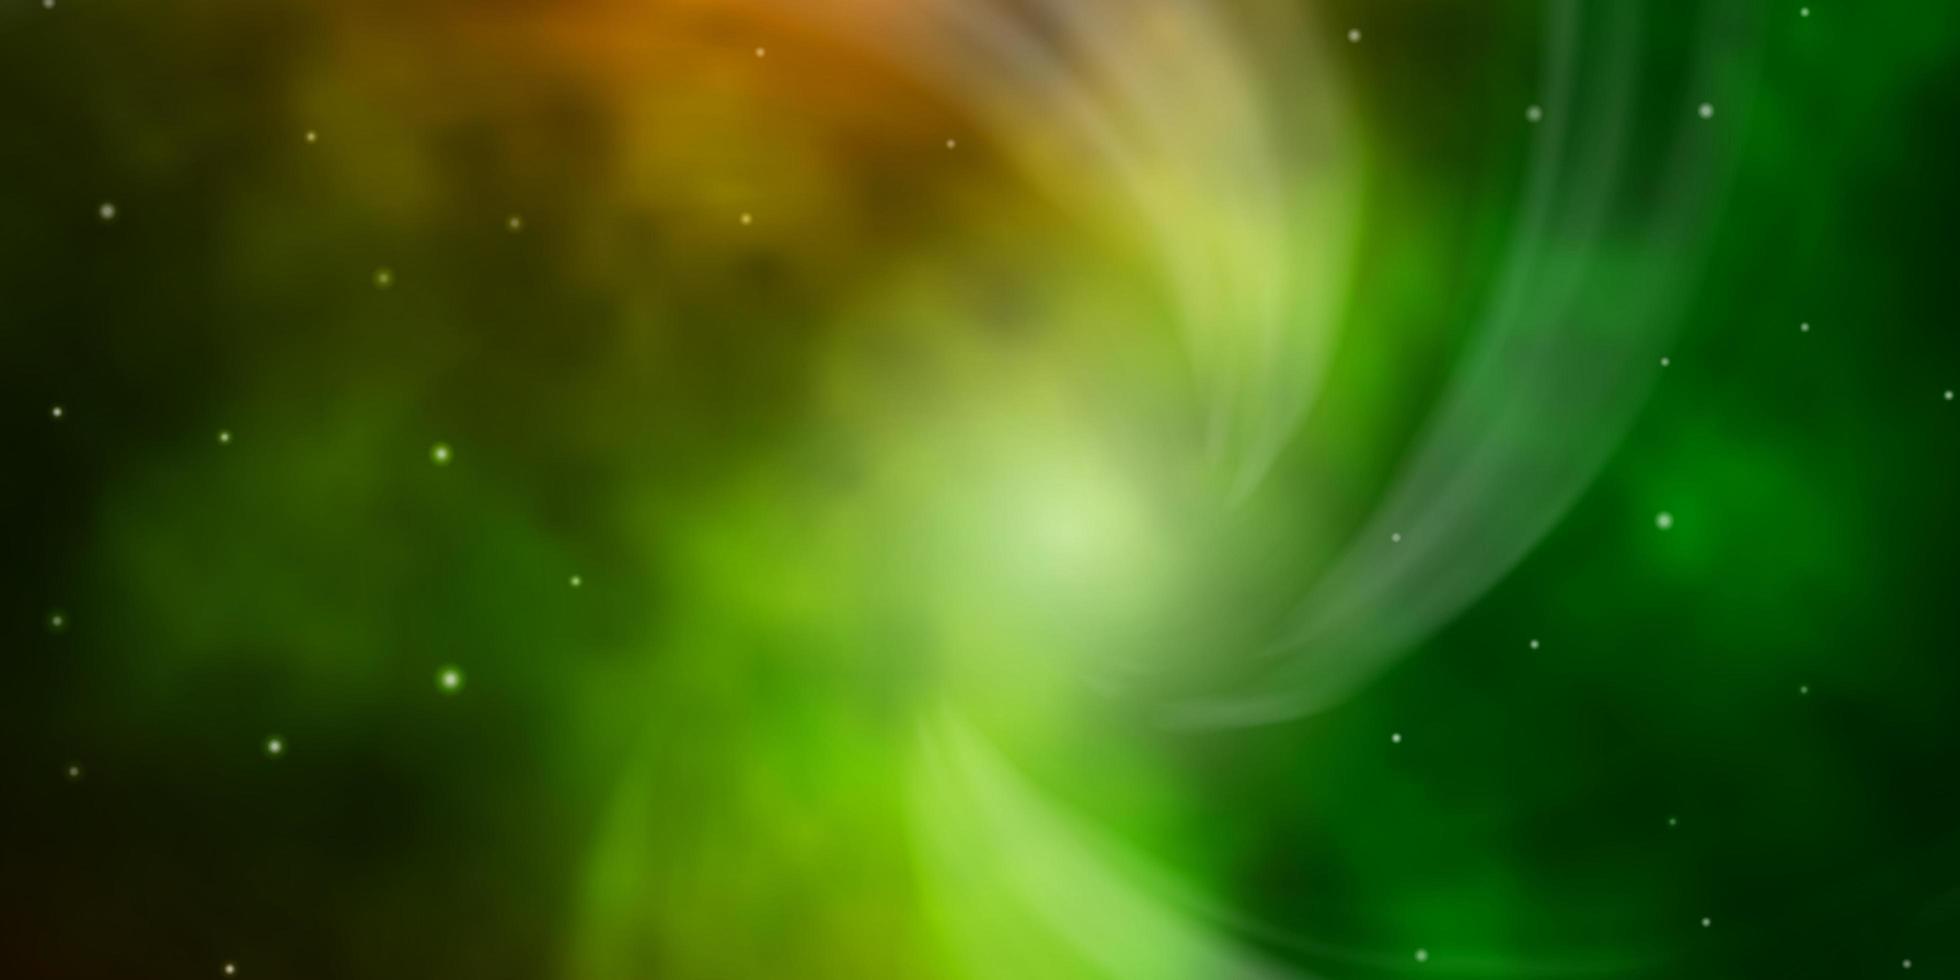 mörkgrön, gul vektorbakgrund med små och stora stjärnor. vektor